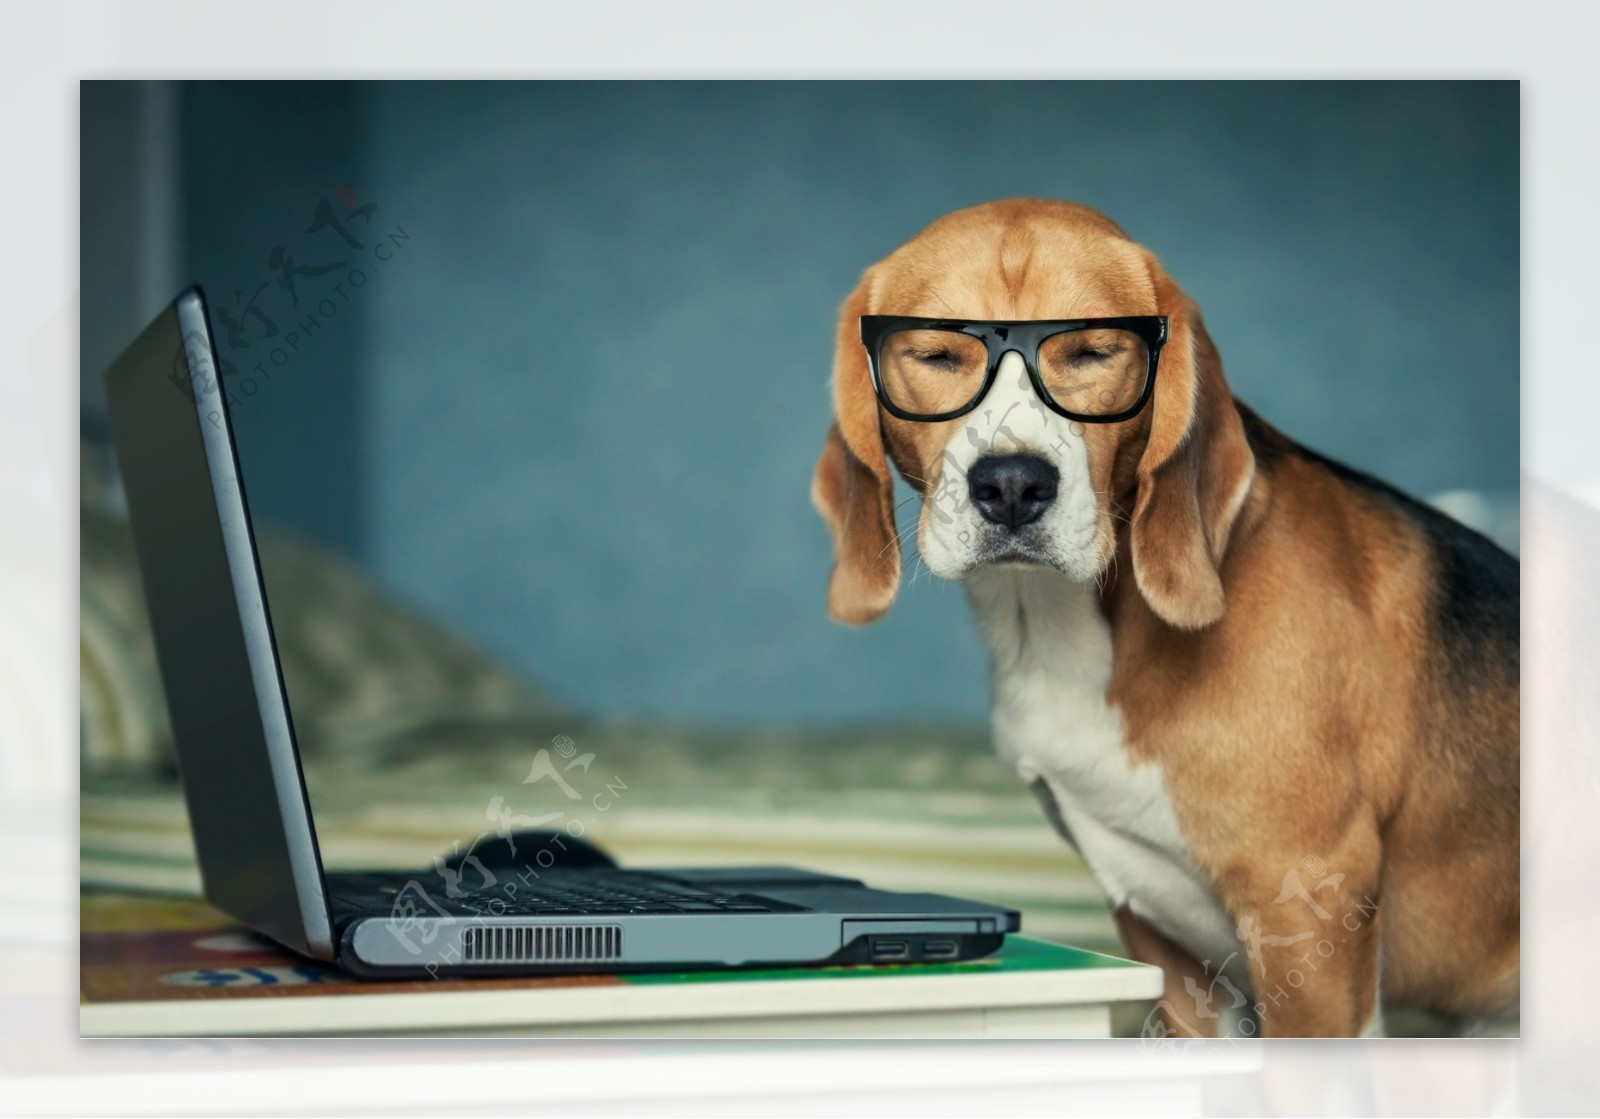 戴眼镜的小狗与笔记本电脑图片